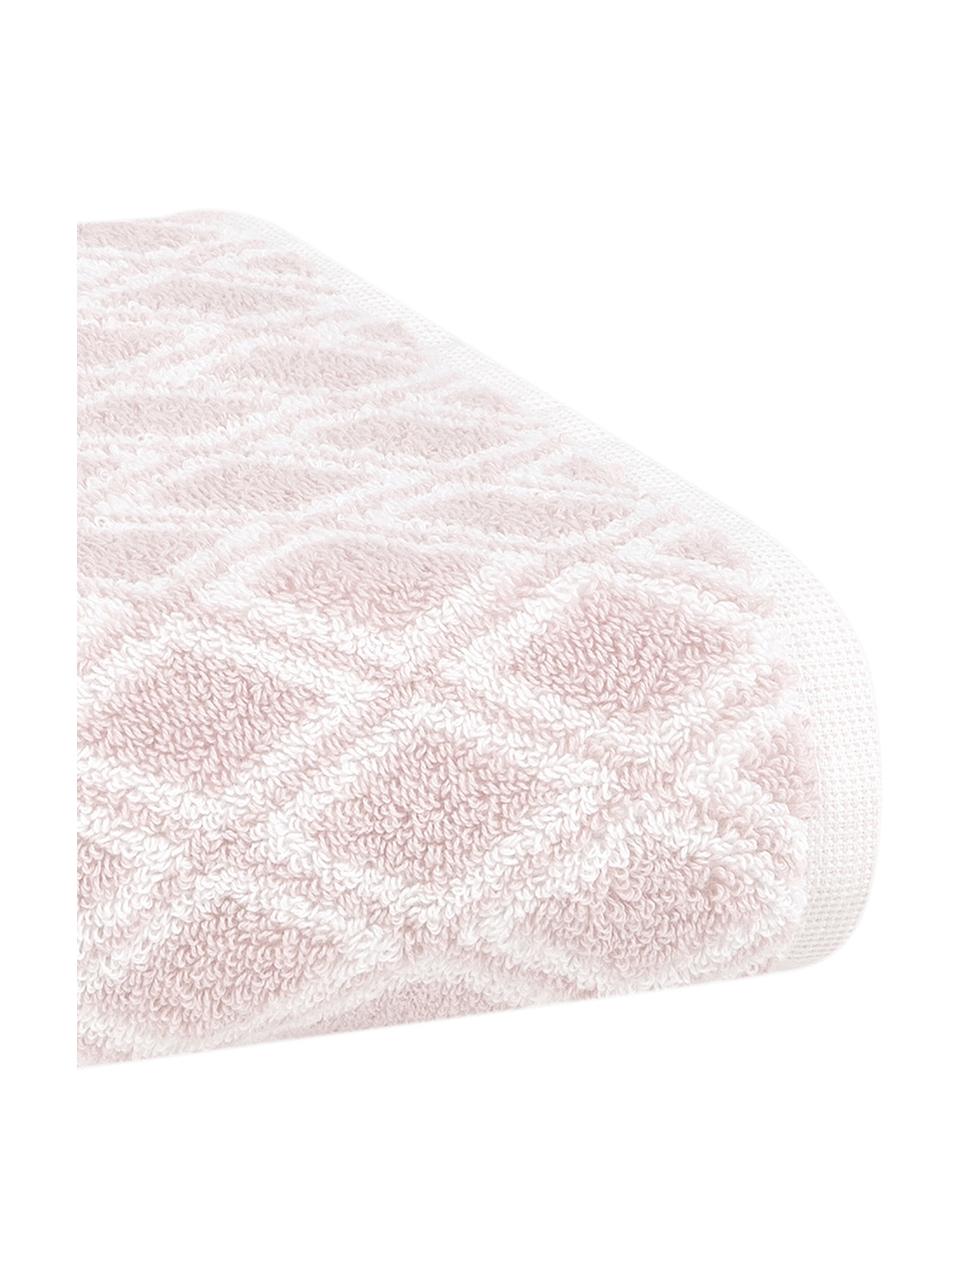 Wende-Handtuch Ava mit grafischem Muster, Rosa, Cremeweiß, Handtuch, B 50 x L 100 cm, 2 Stück